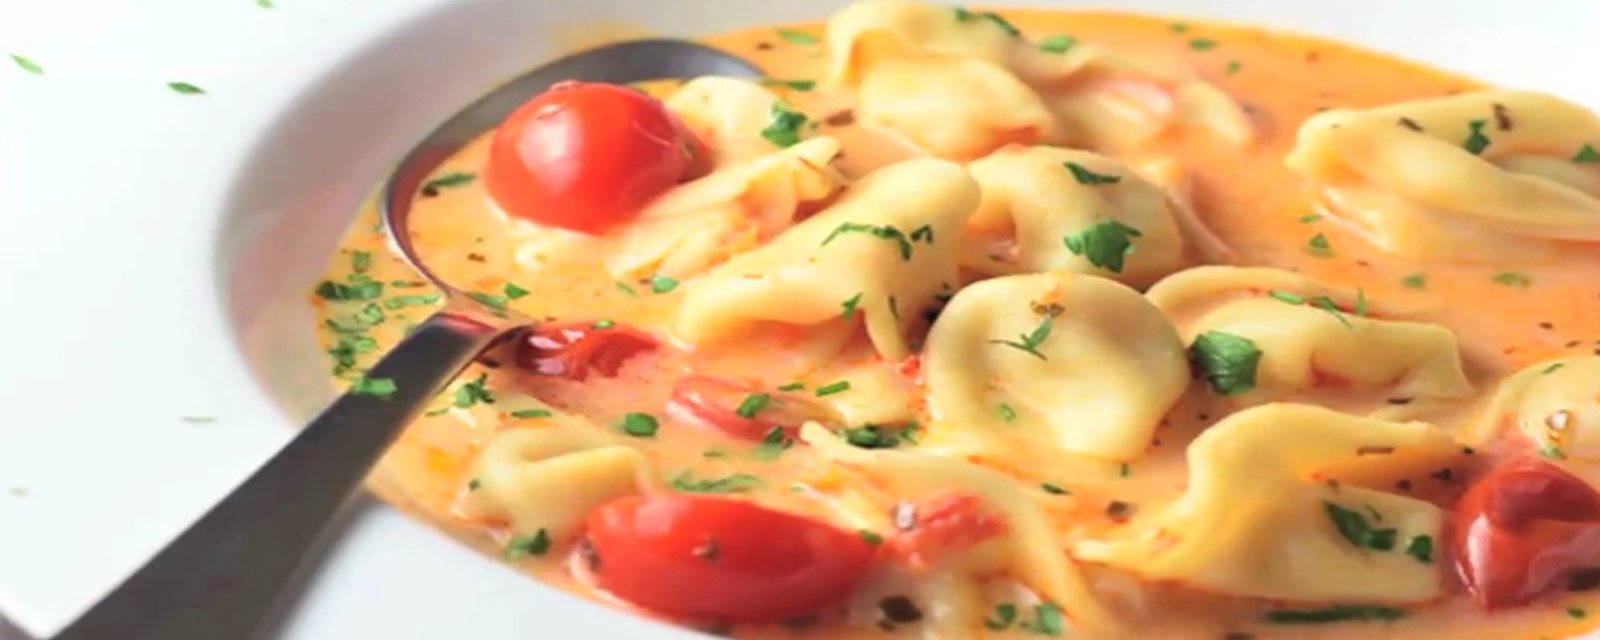 Peu de temps à passer en cuisine! Cette soupe aux tomates et tortellinis se prépare en un instant!